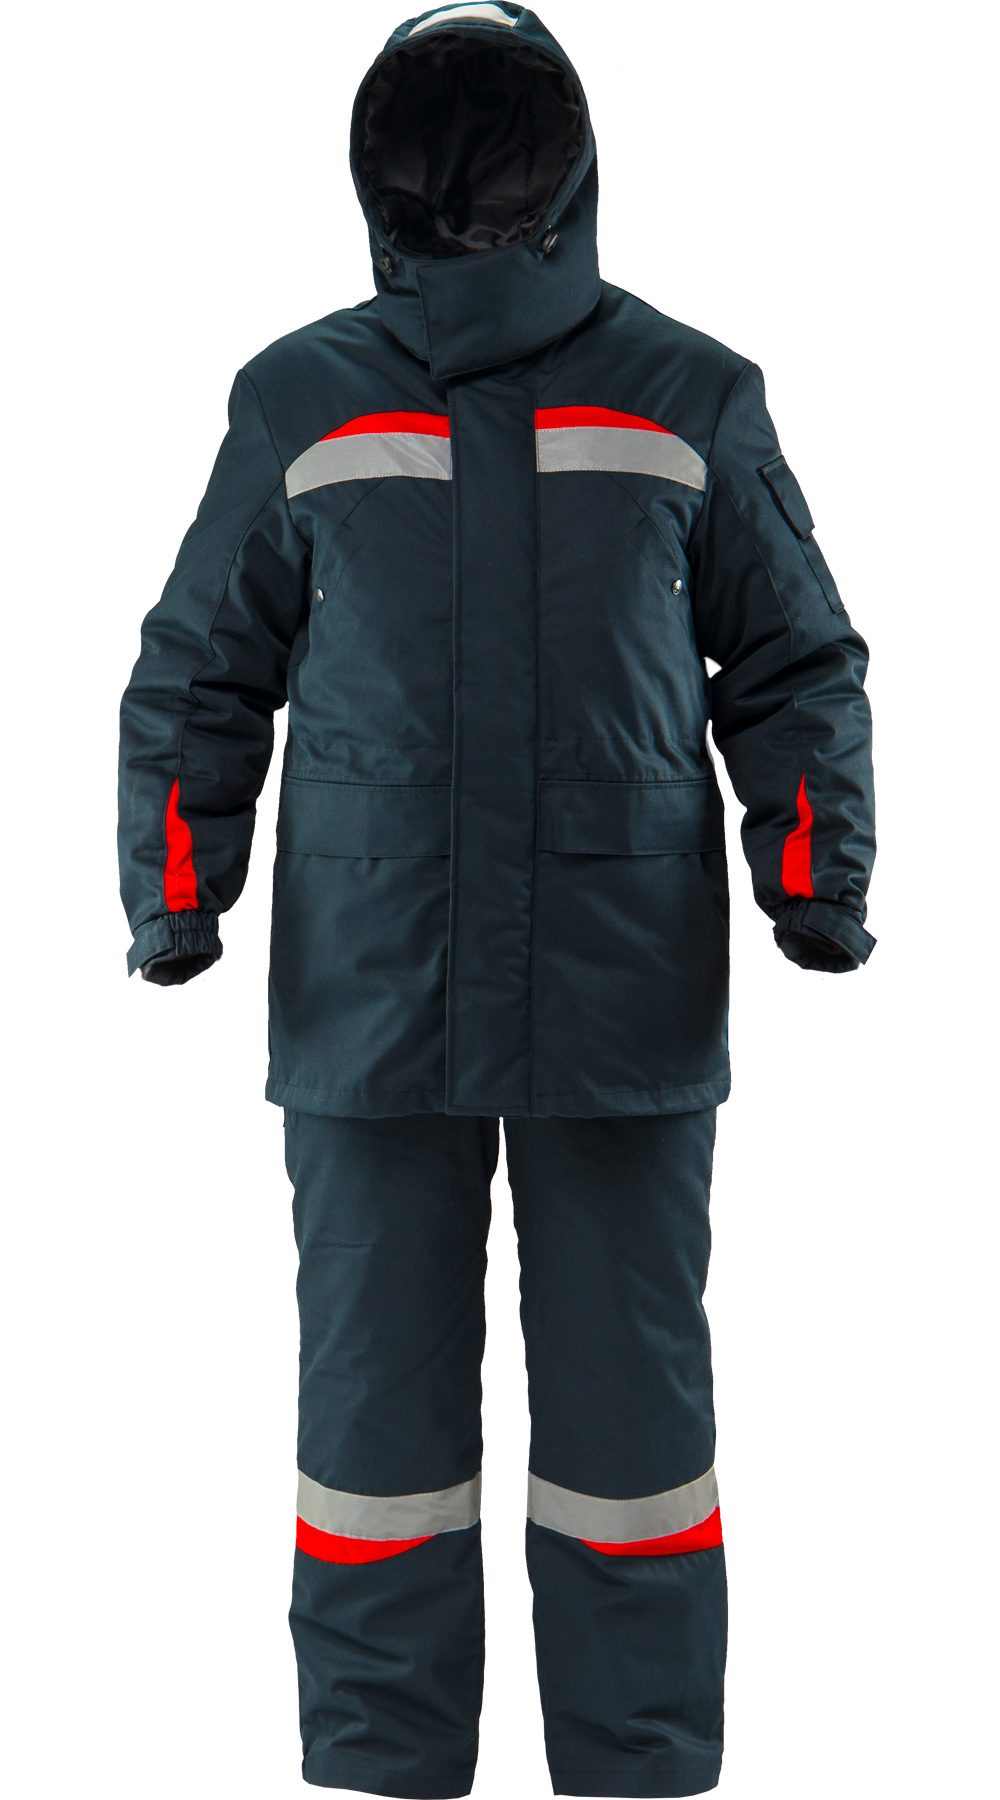 Зимний костюм "АНГАРА" мужской, утепленный (куртка и полукомбинезон), цвет: темно-синий с красным, ткань: смесовая